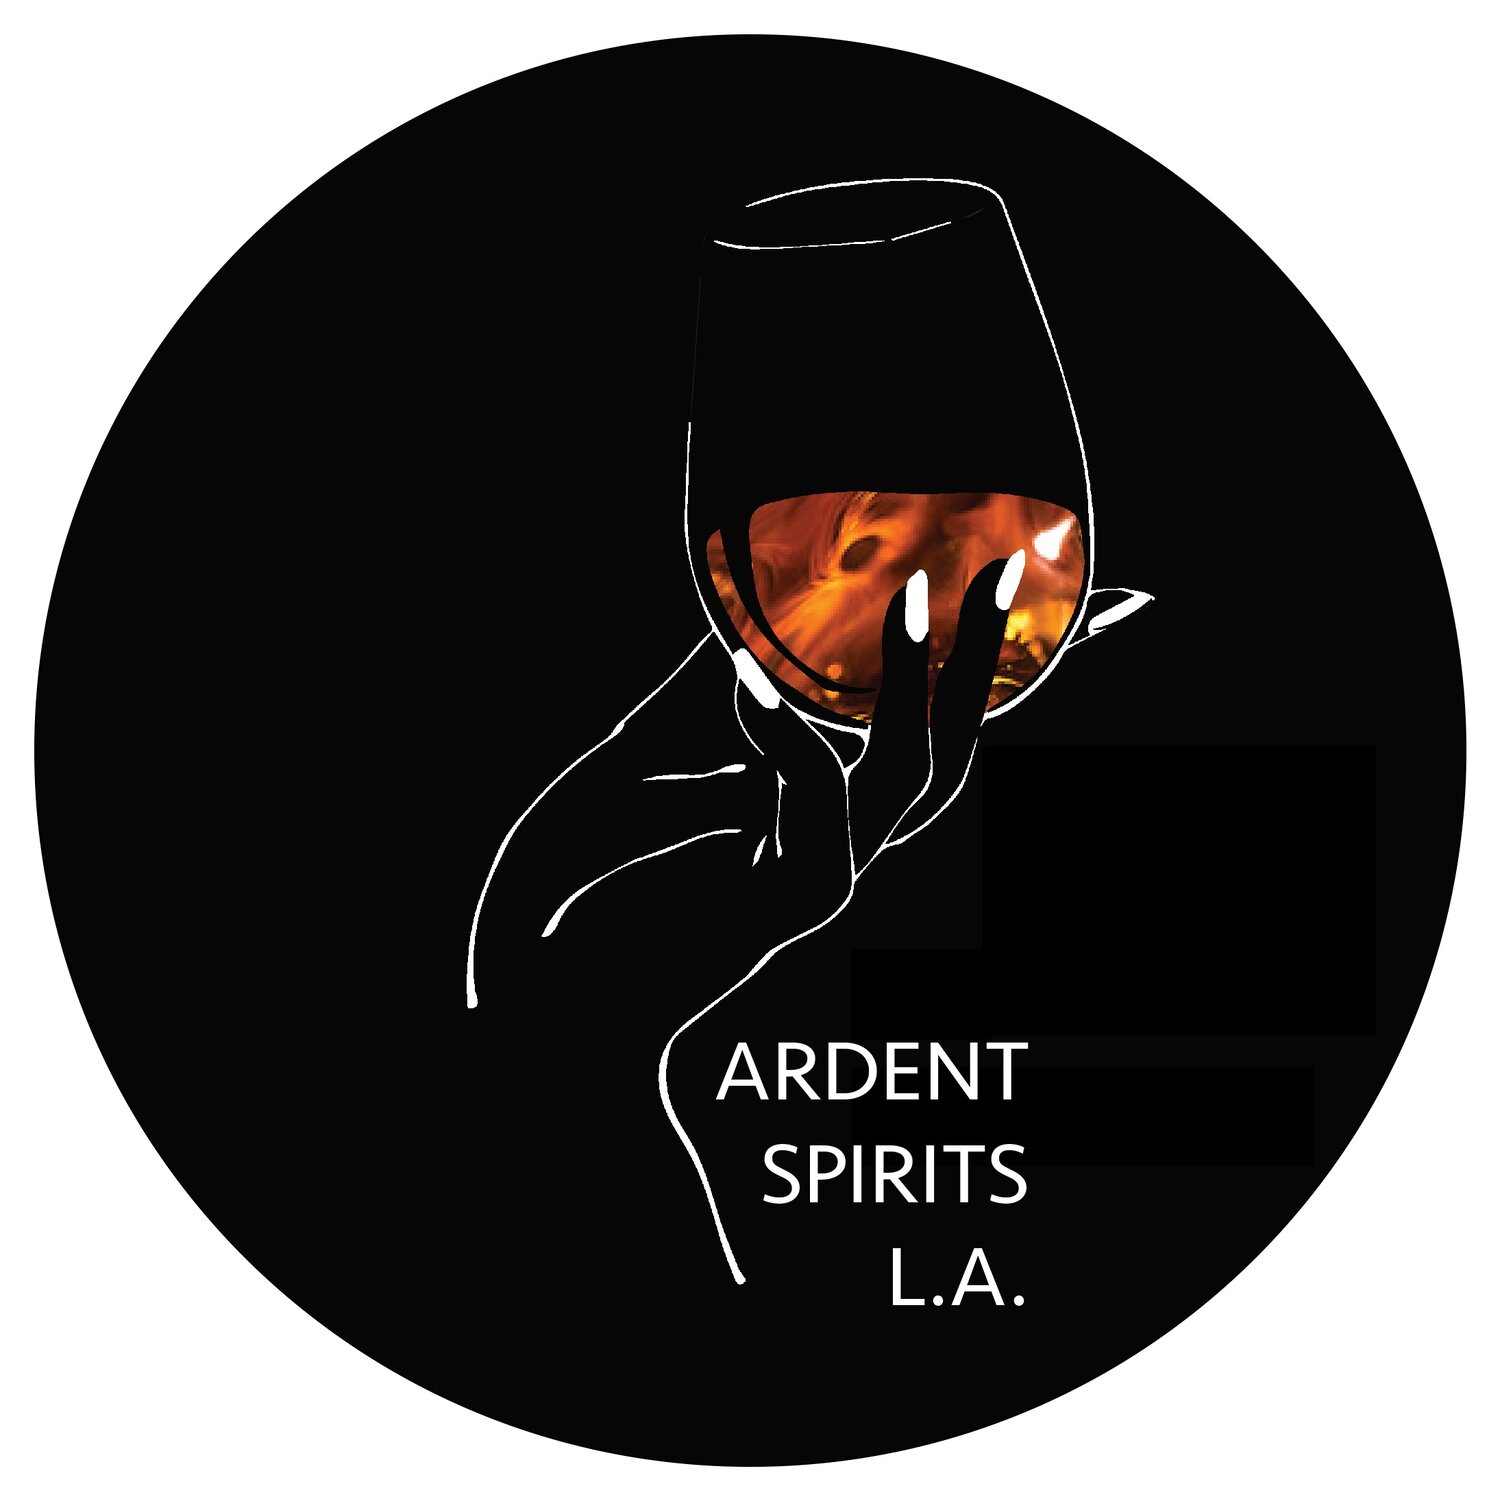 ARDENT SPIRITS L.A.